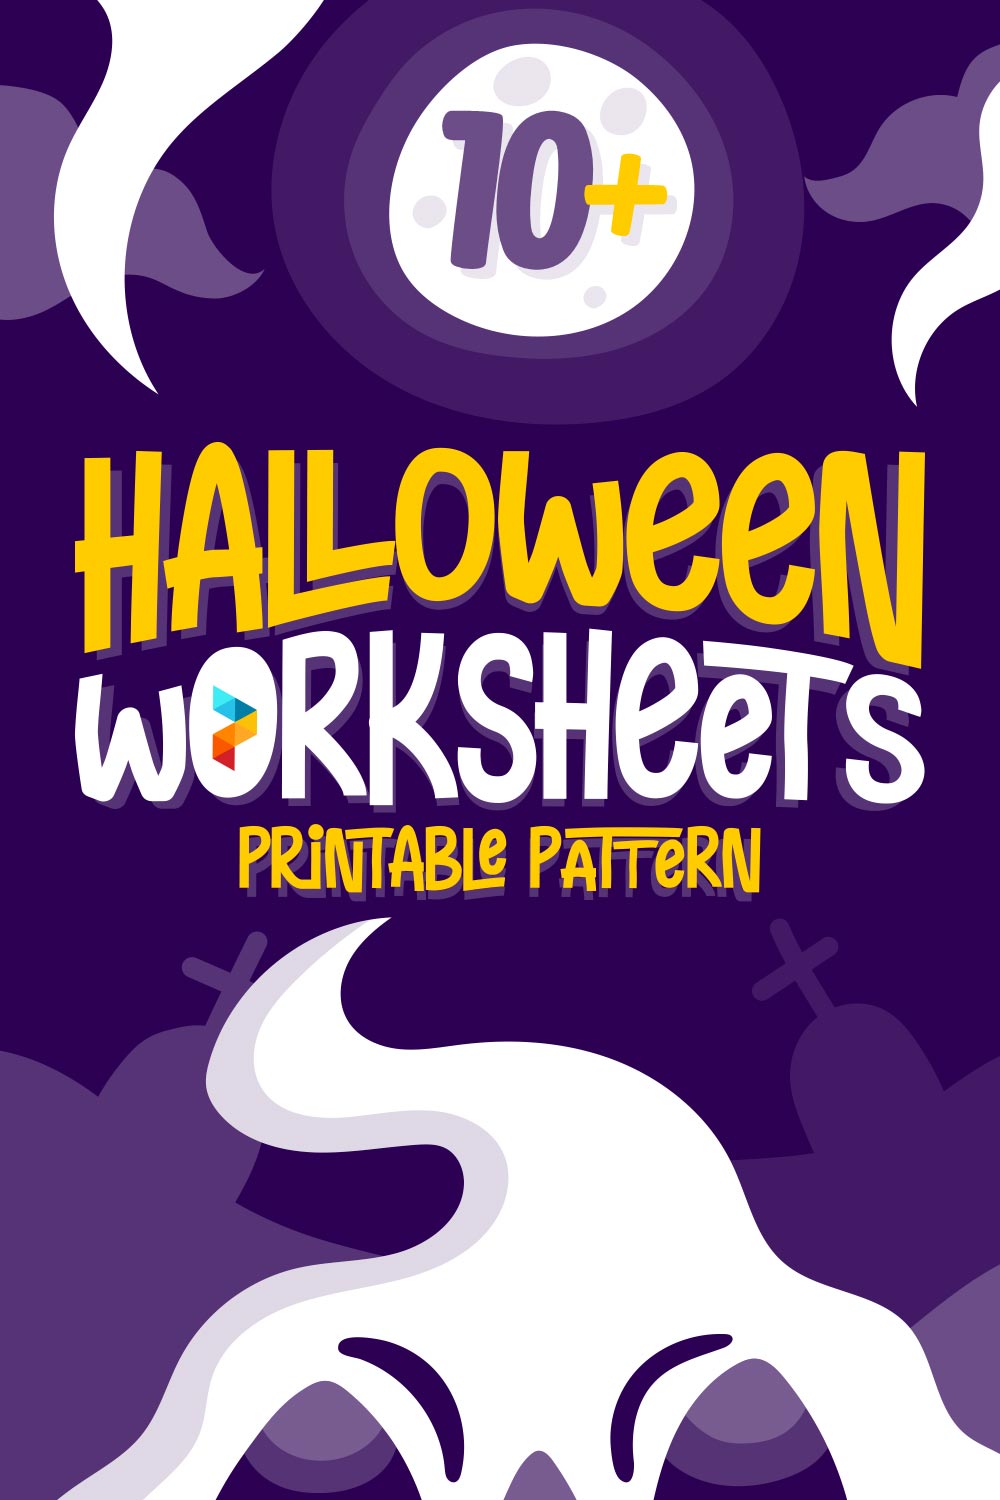 Halloween Worksheets Printable Pattern